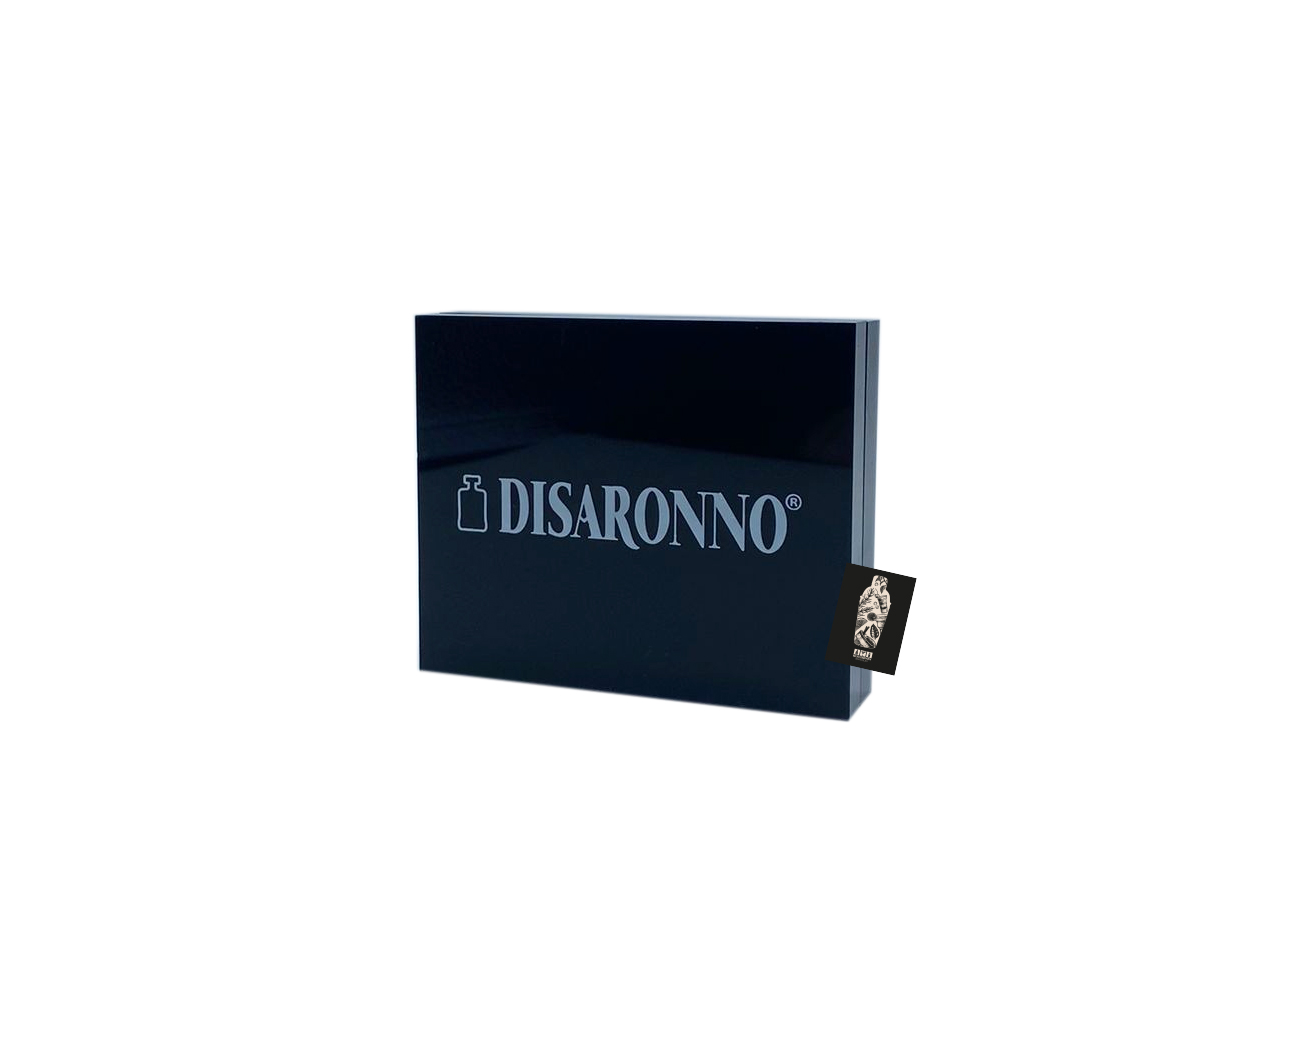 Disaronno Tischaufstell Magnet Kartenhalter magnetischer Schildhalter 2-Teilig Maße: ca. 10x8cm 